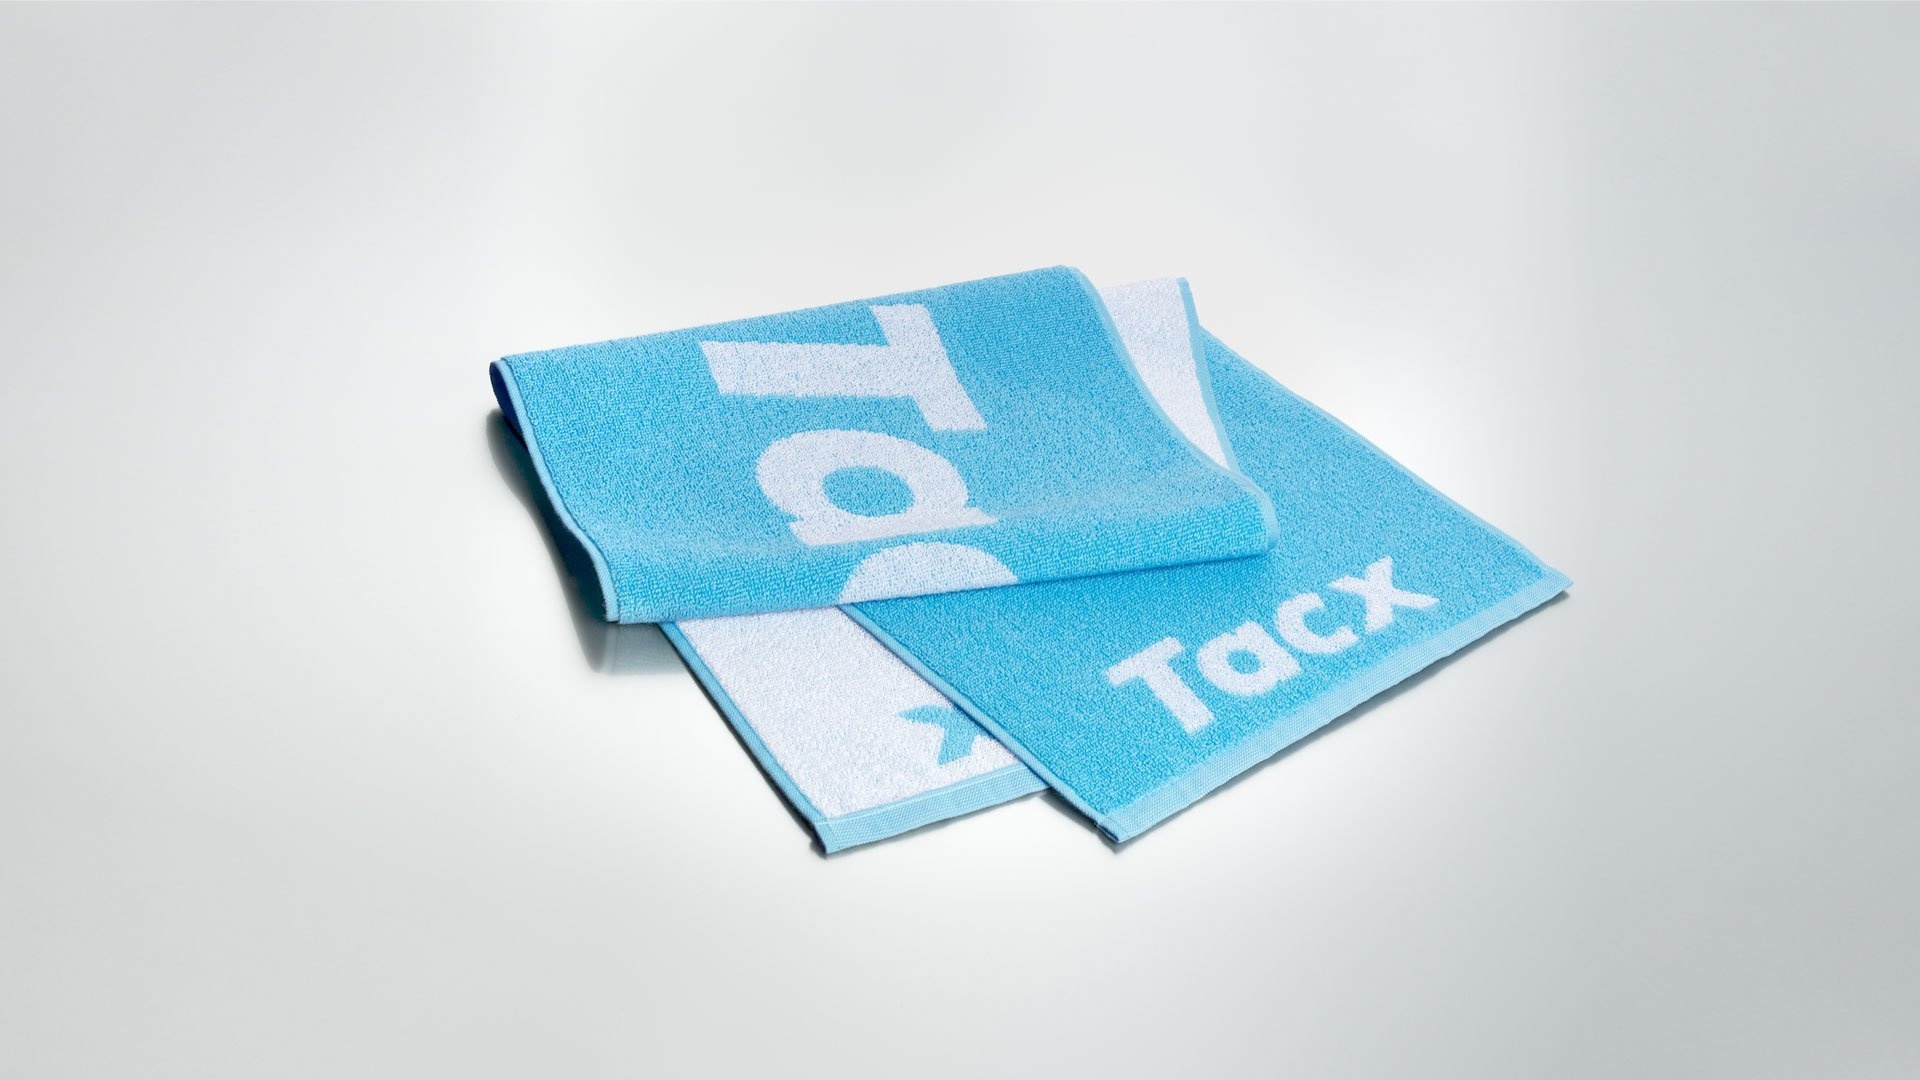 Tilbehør - Hometrainer - Hometrainer udstyr - Garmin Tacx Håndklæde til Hometrainer